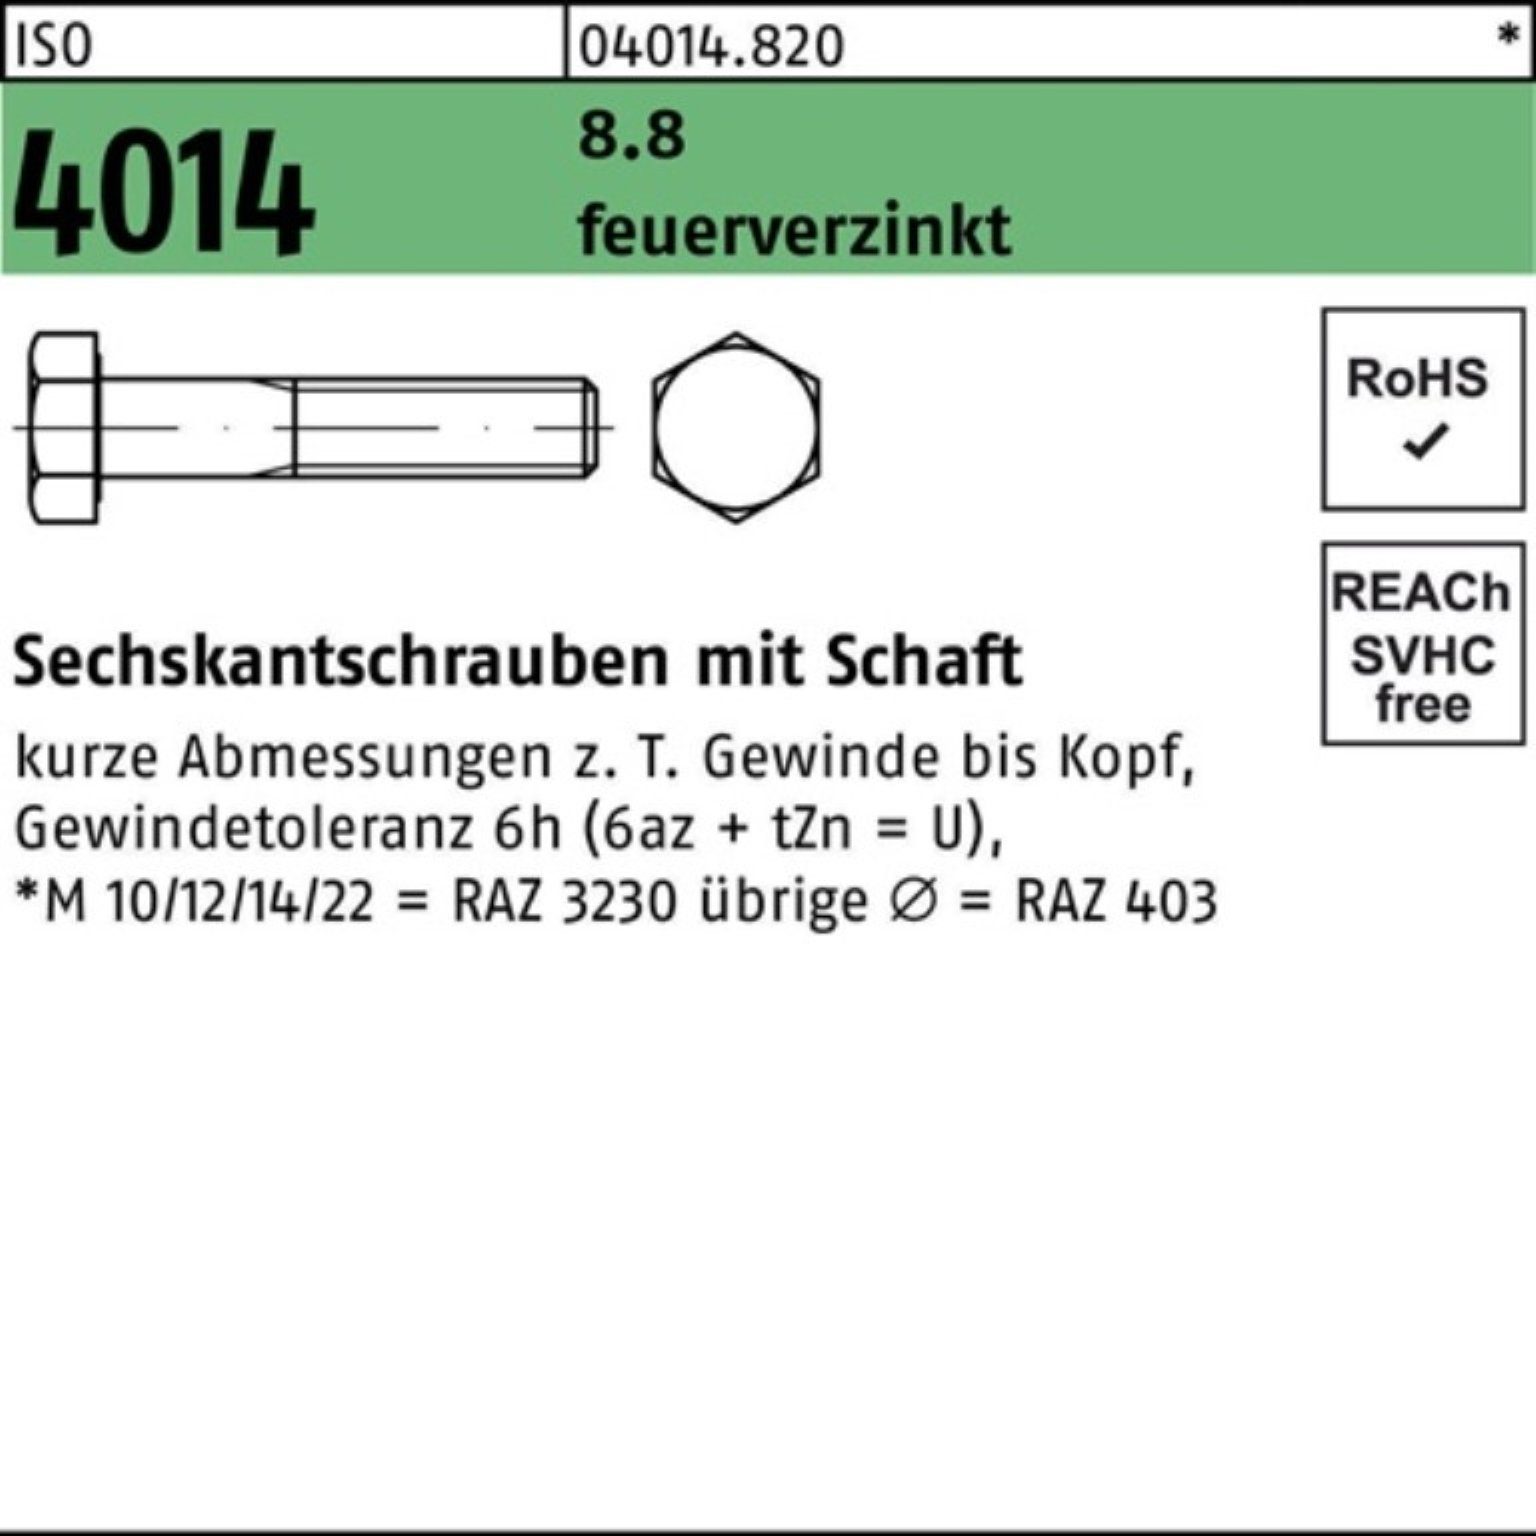 Bufab Sechskantschraube 100er Pack Sechskantschraube 8.8 feuerverz. 1 180 4014 Schaft ISO M27x